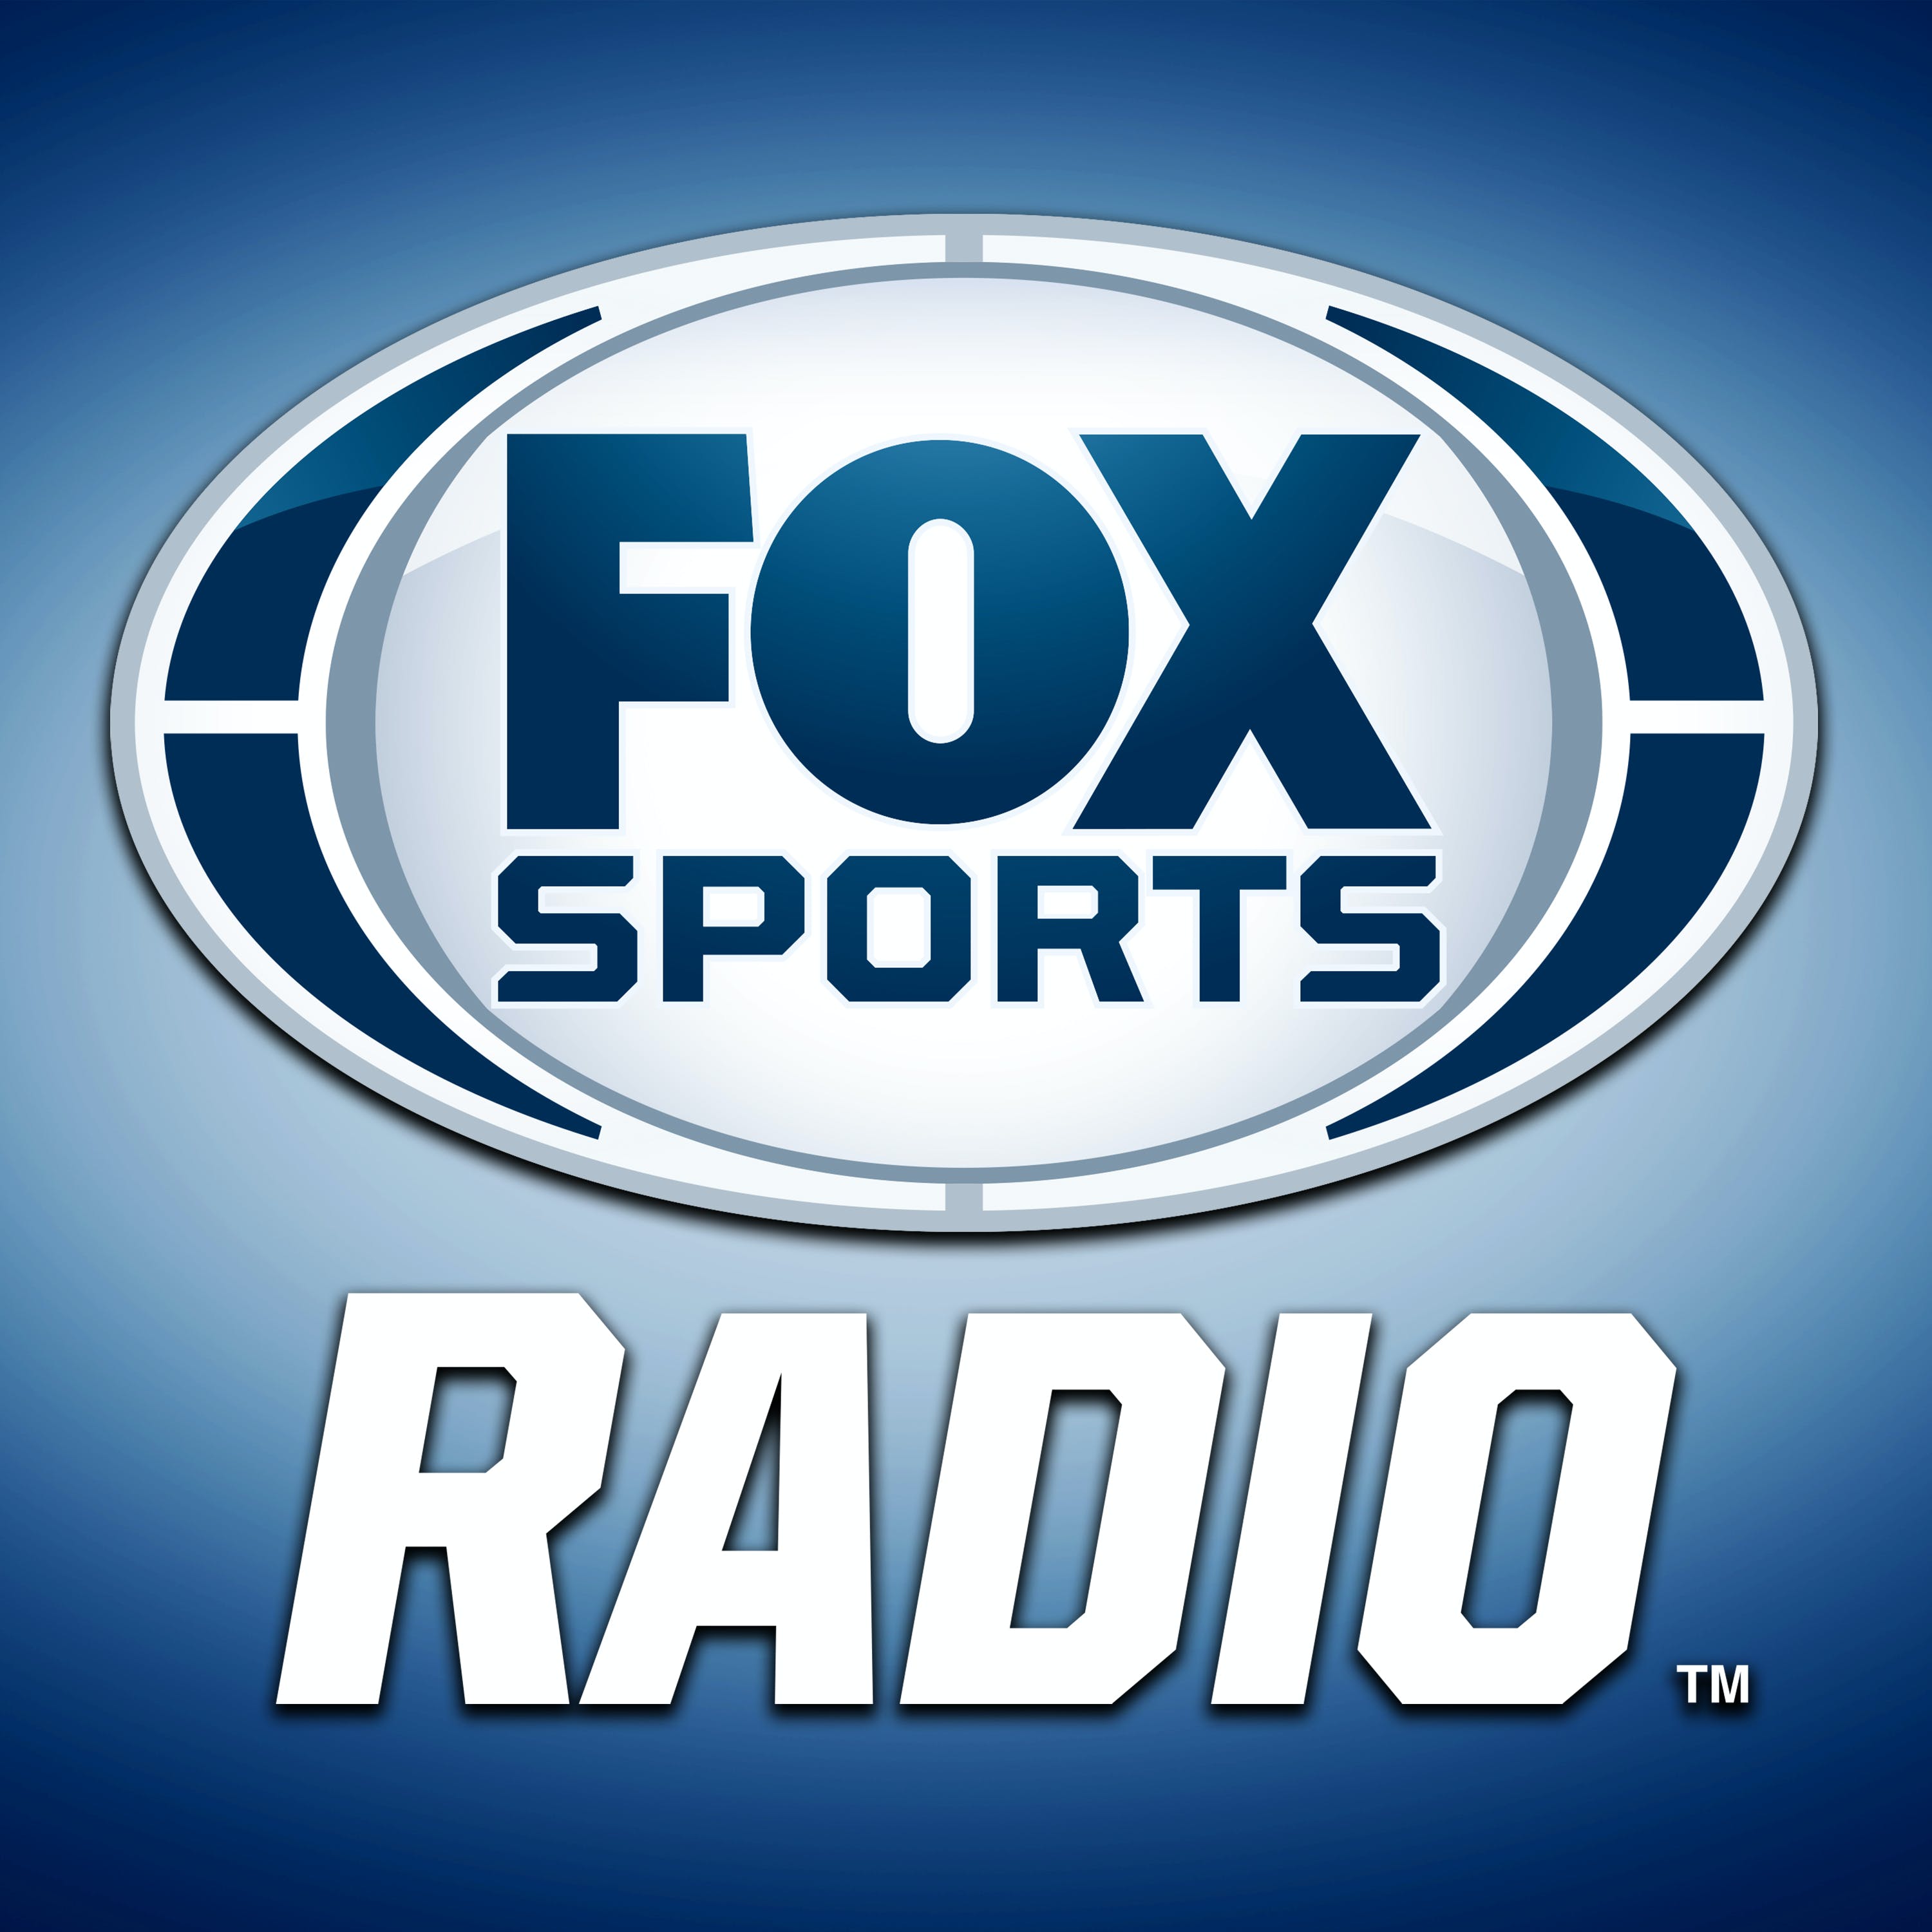 05/01/2021 - FOX Sports Saturday with Steve Hartman and Geoff Schwartz